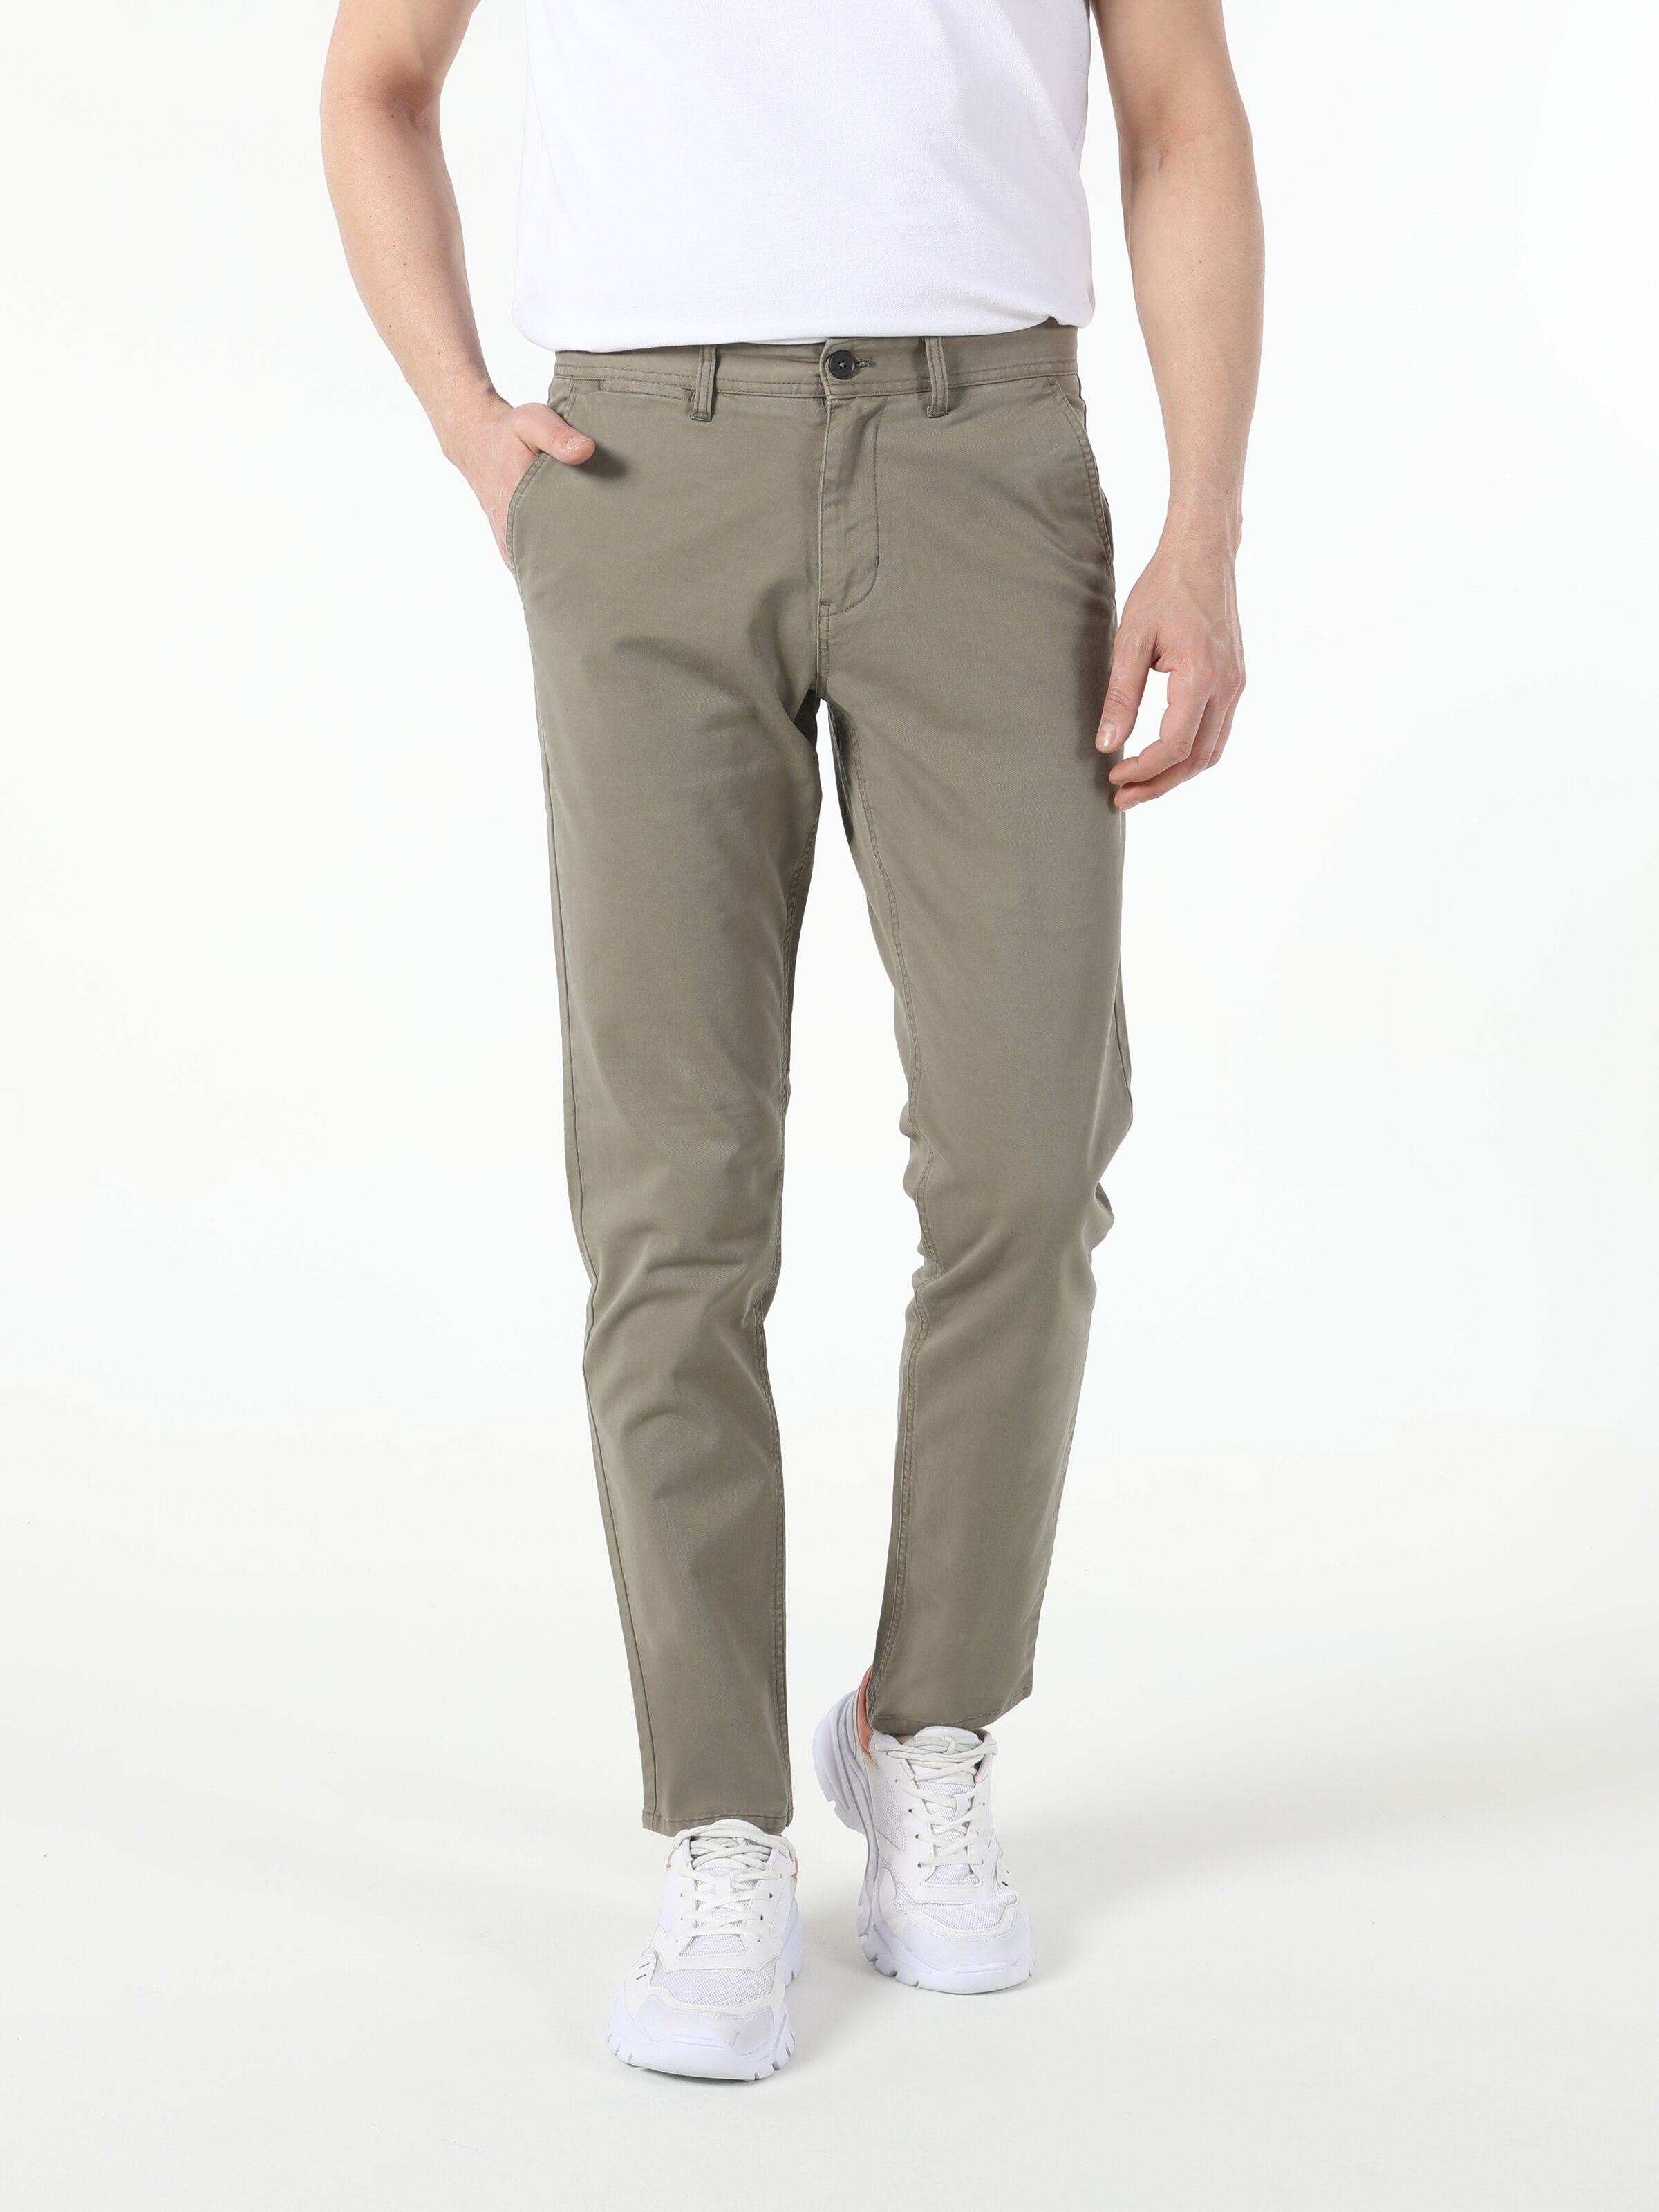 Afficher les détails de Pantalon Vert Essence Pour Homme, Coupe Régulière, Taille Moyenne, Jambe Droite